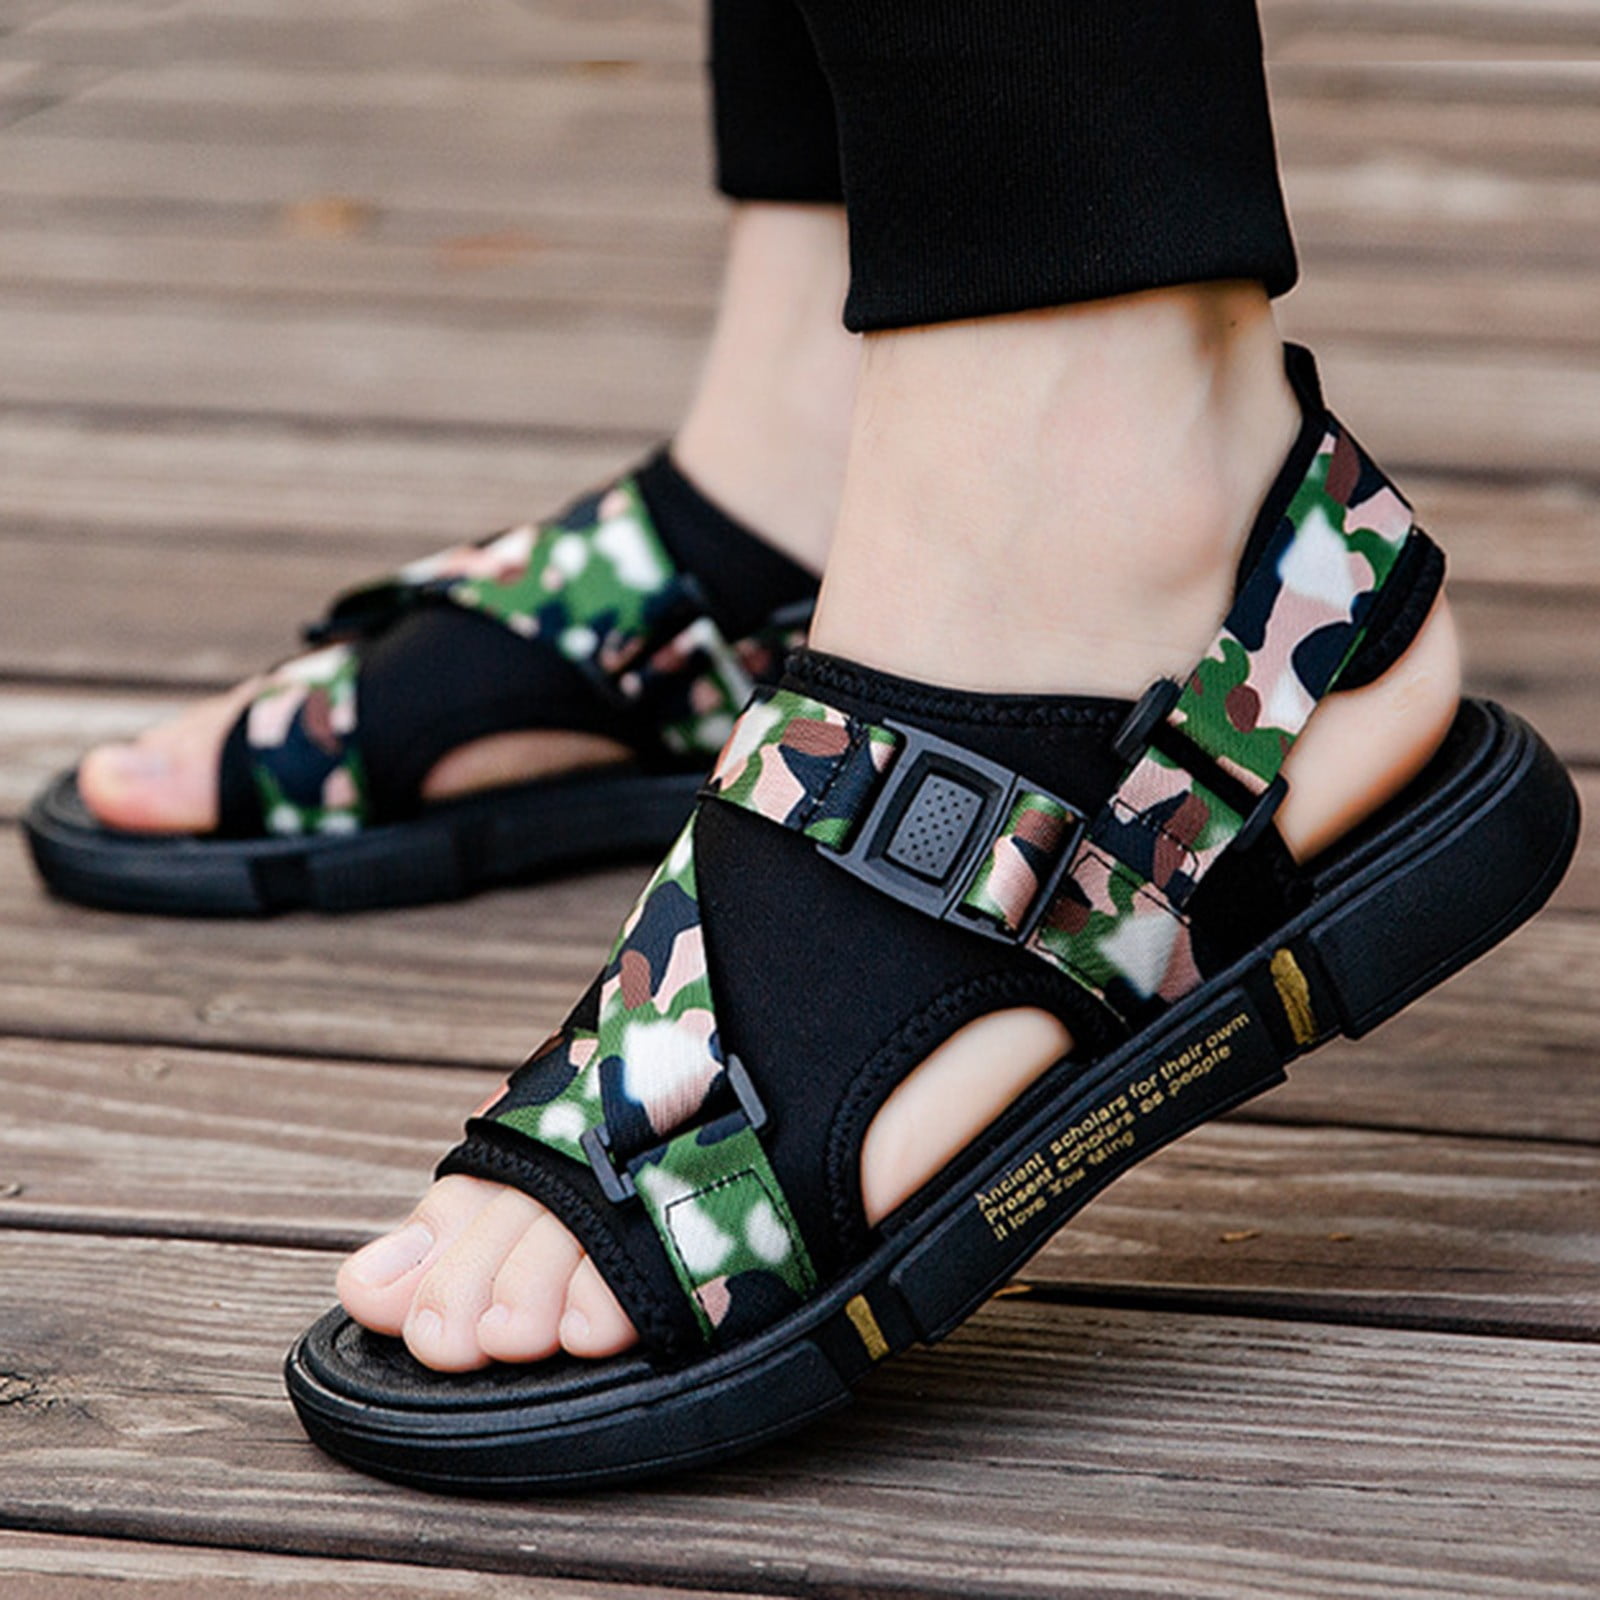 Todays Look Fashion Women's Summer Flip Flop Cork Sandals